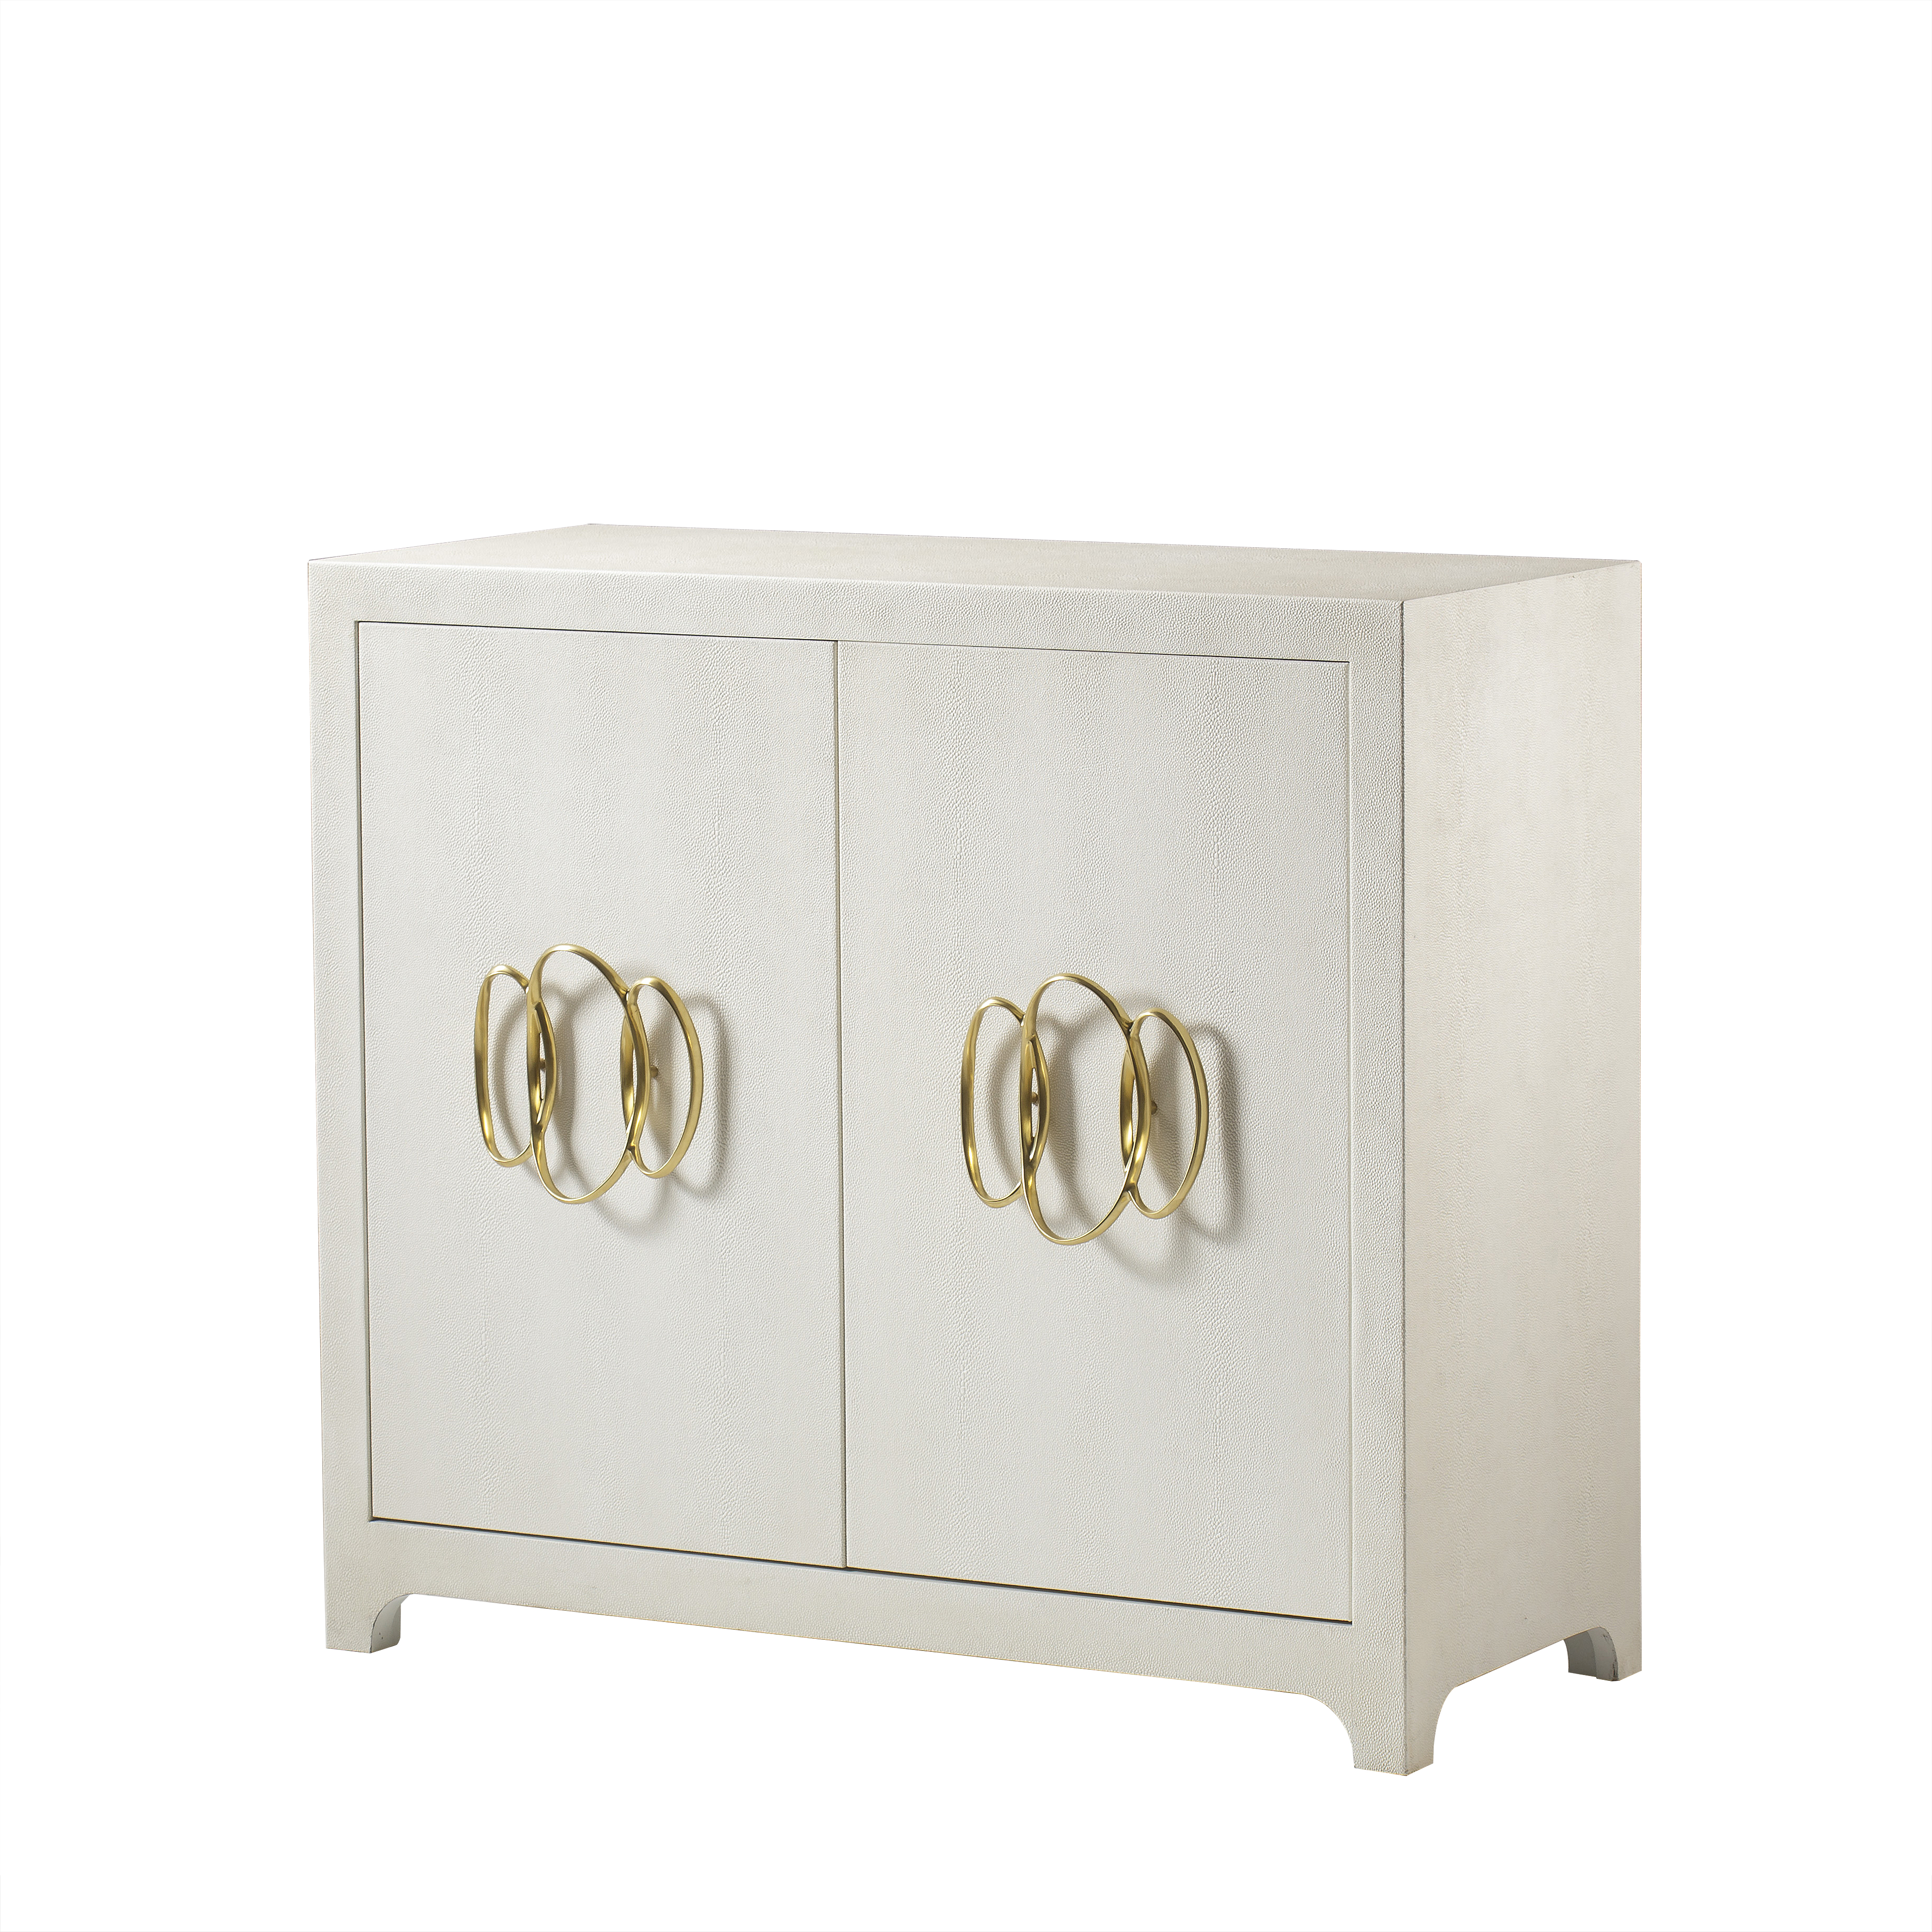 Monroe door chest from Century Furniture